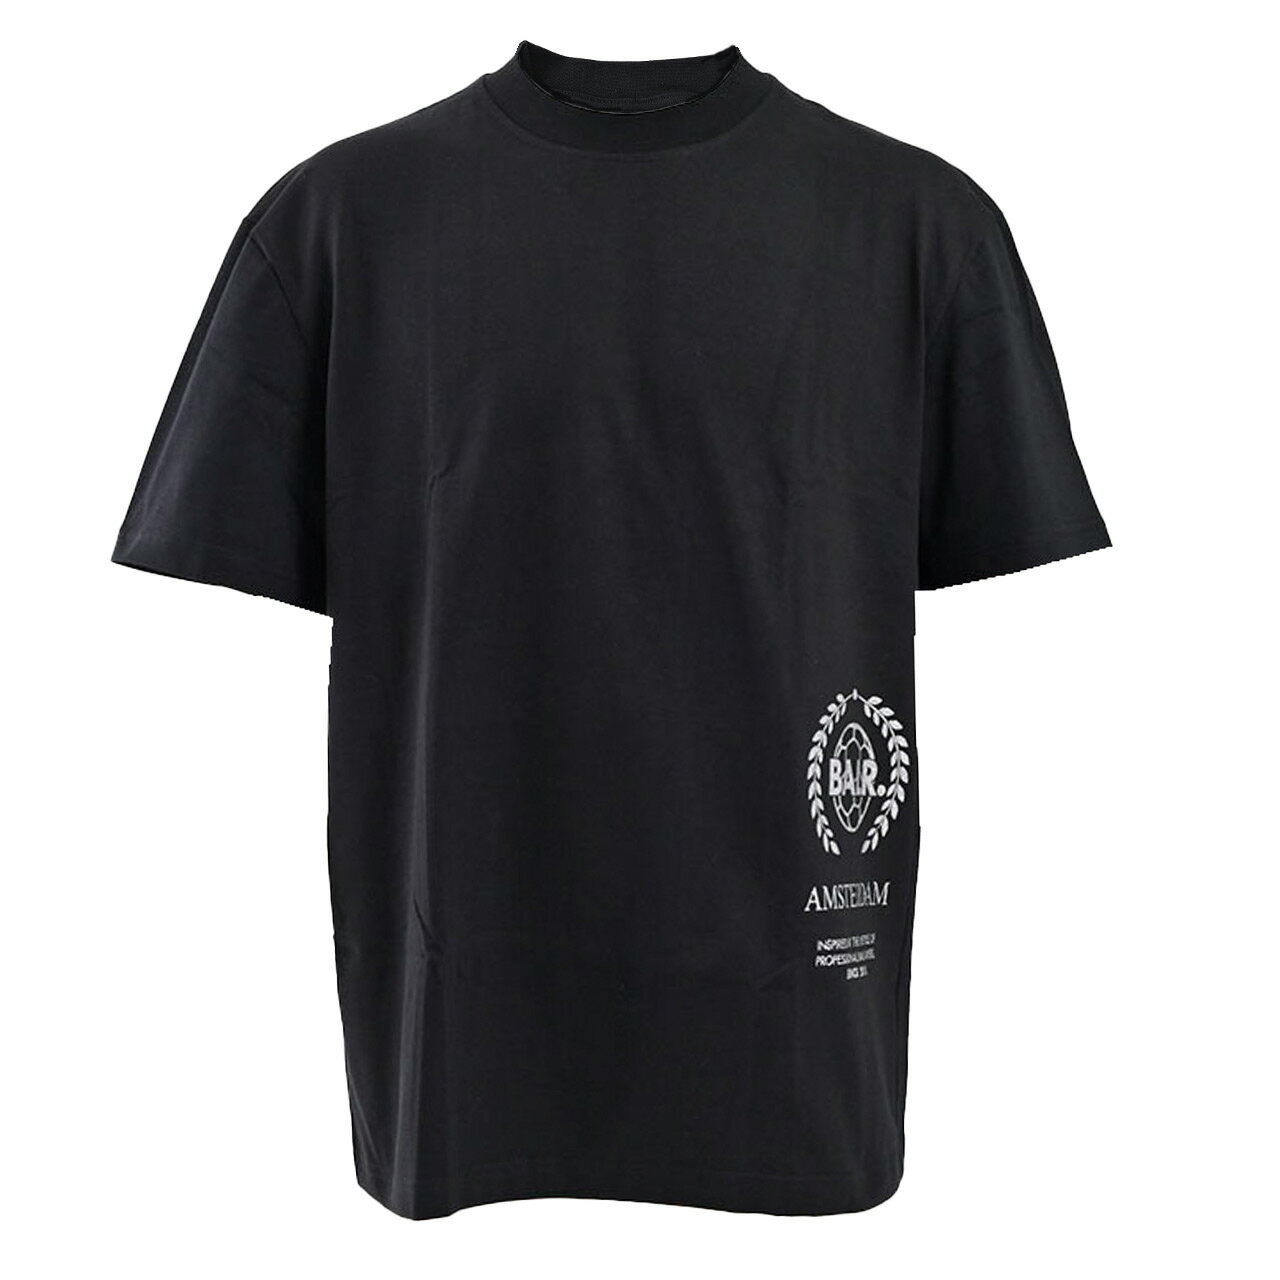 ボーラー Print Back Amsterdam 半袖 Tシャツ BALR. B1112.1017 Jet black ブラック 2021年春夏新作   残り1点のみ